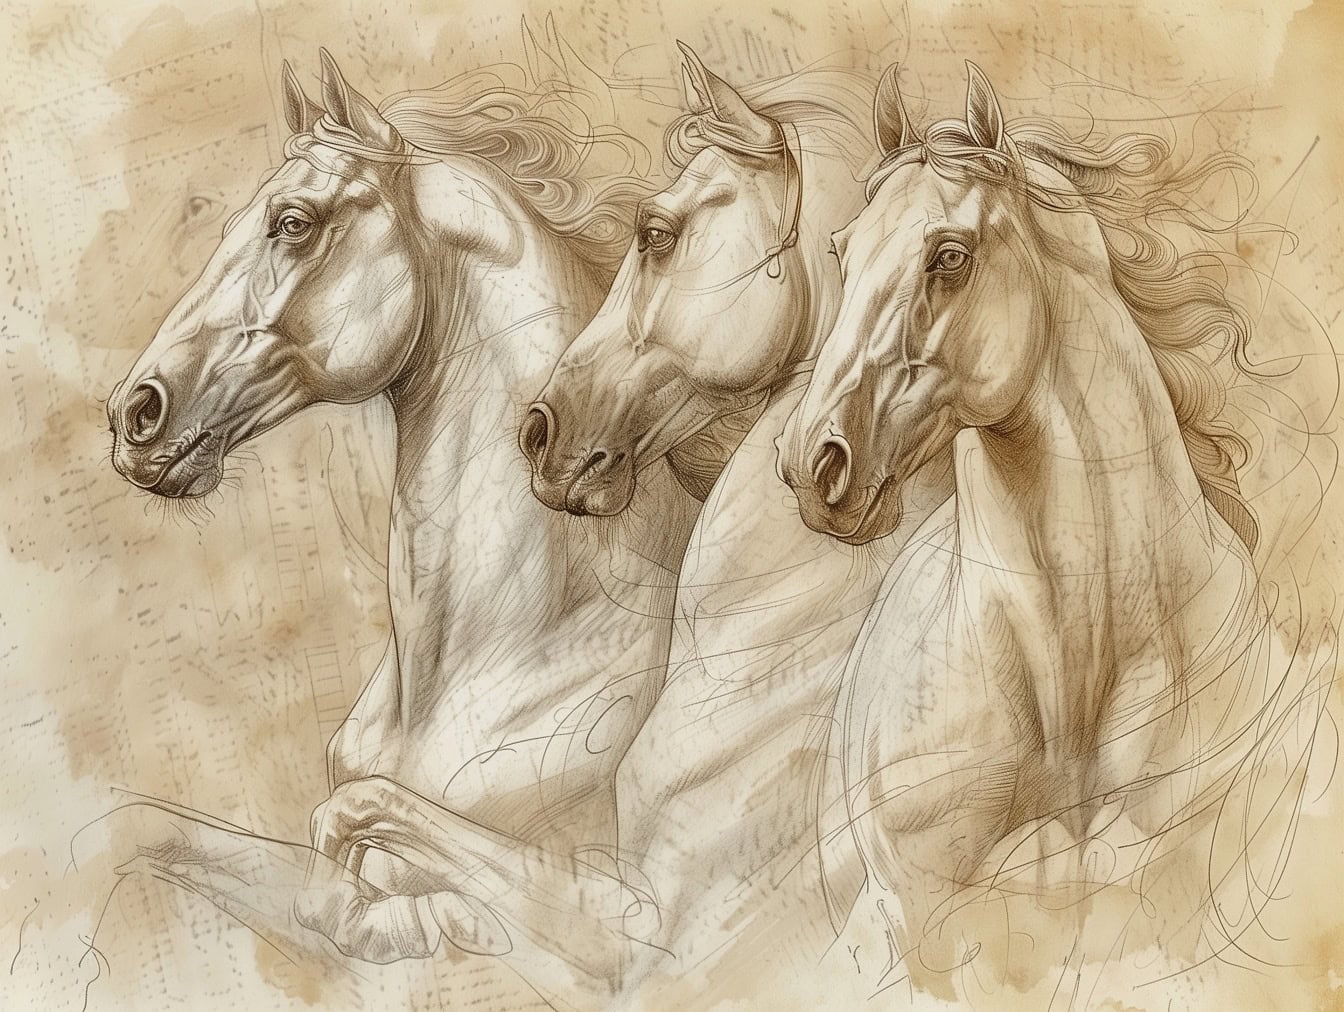 Odręczny rysunek koni na starym, wyblakłym, półprzezroczystym papierze w stylu sztuki średniowiecznych artystów